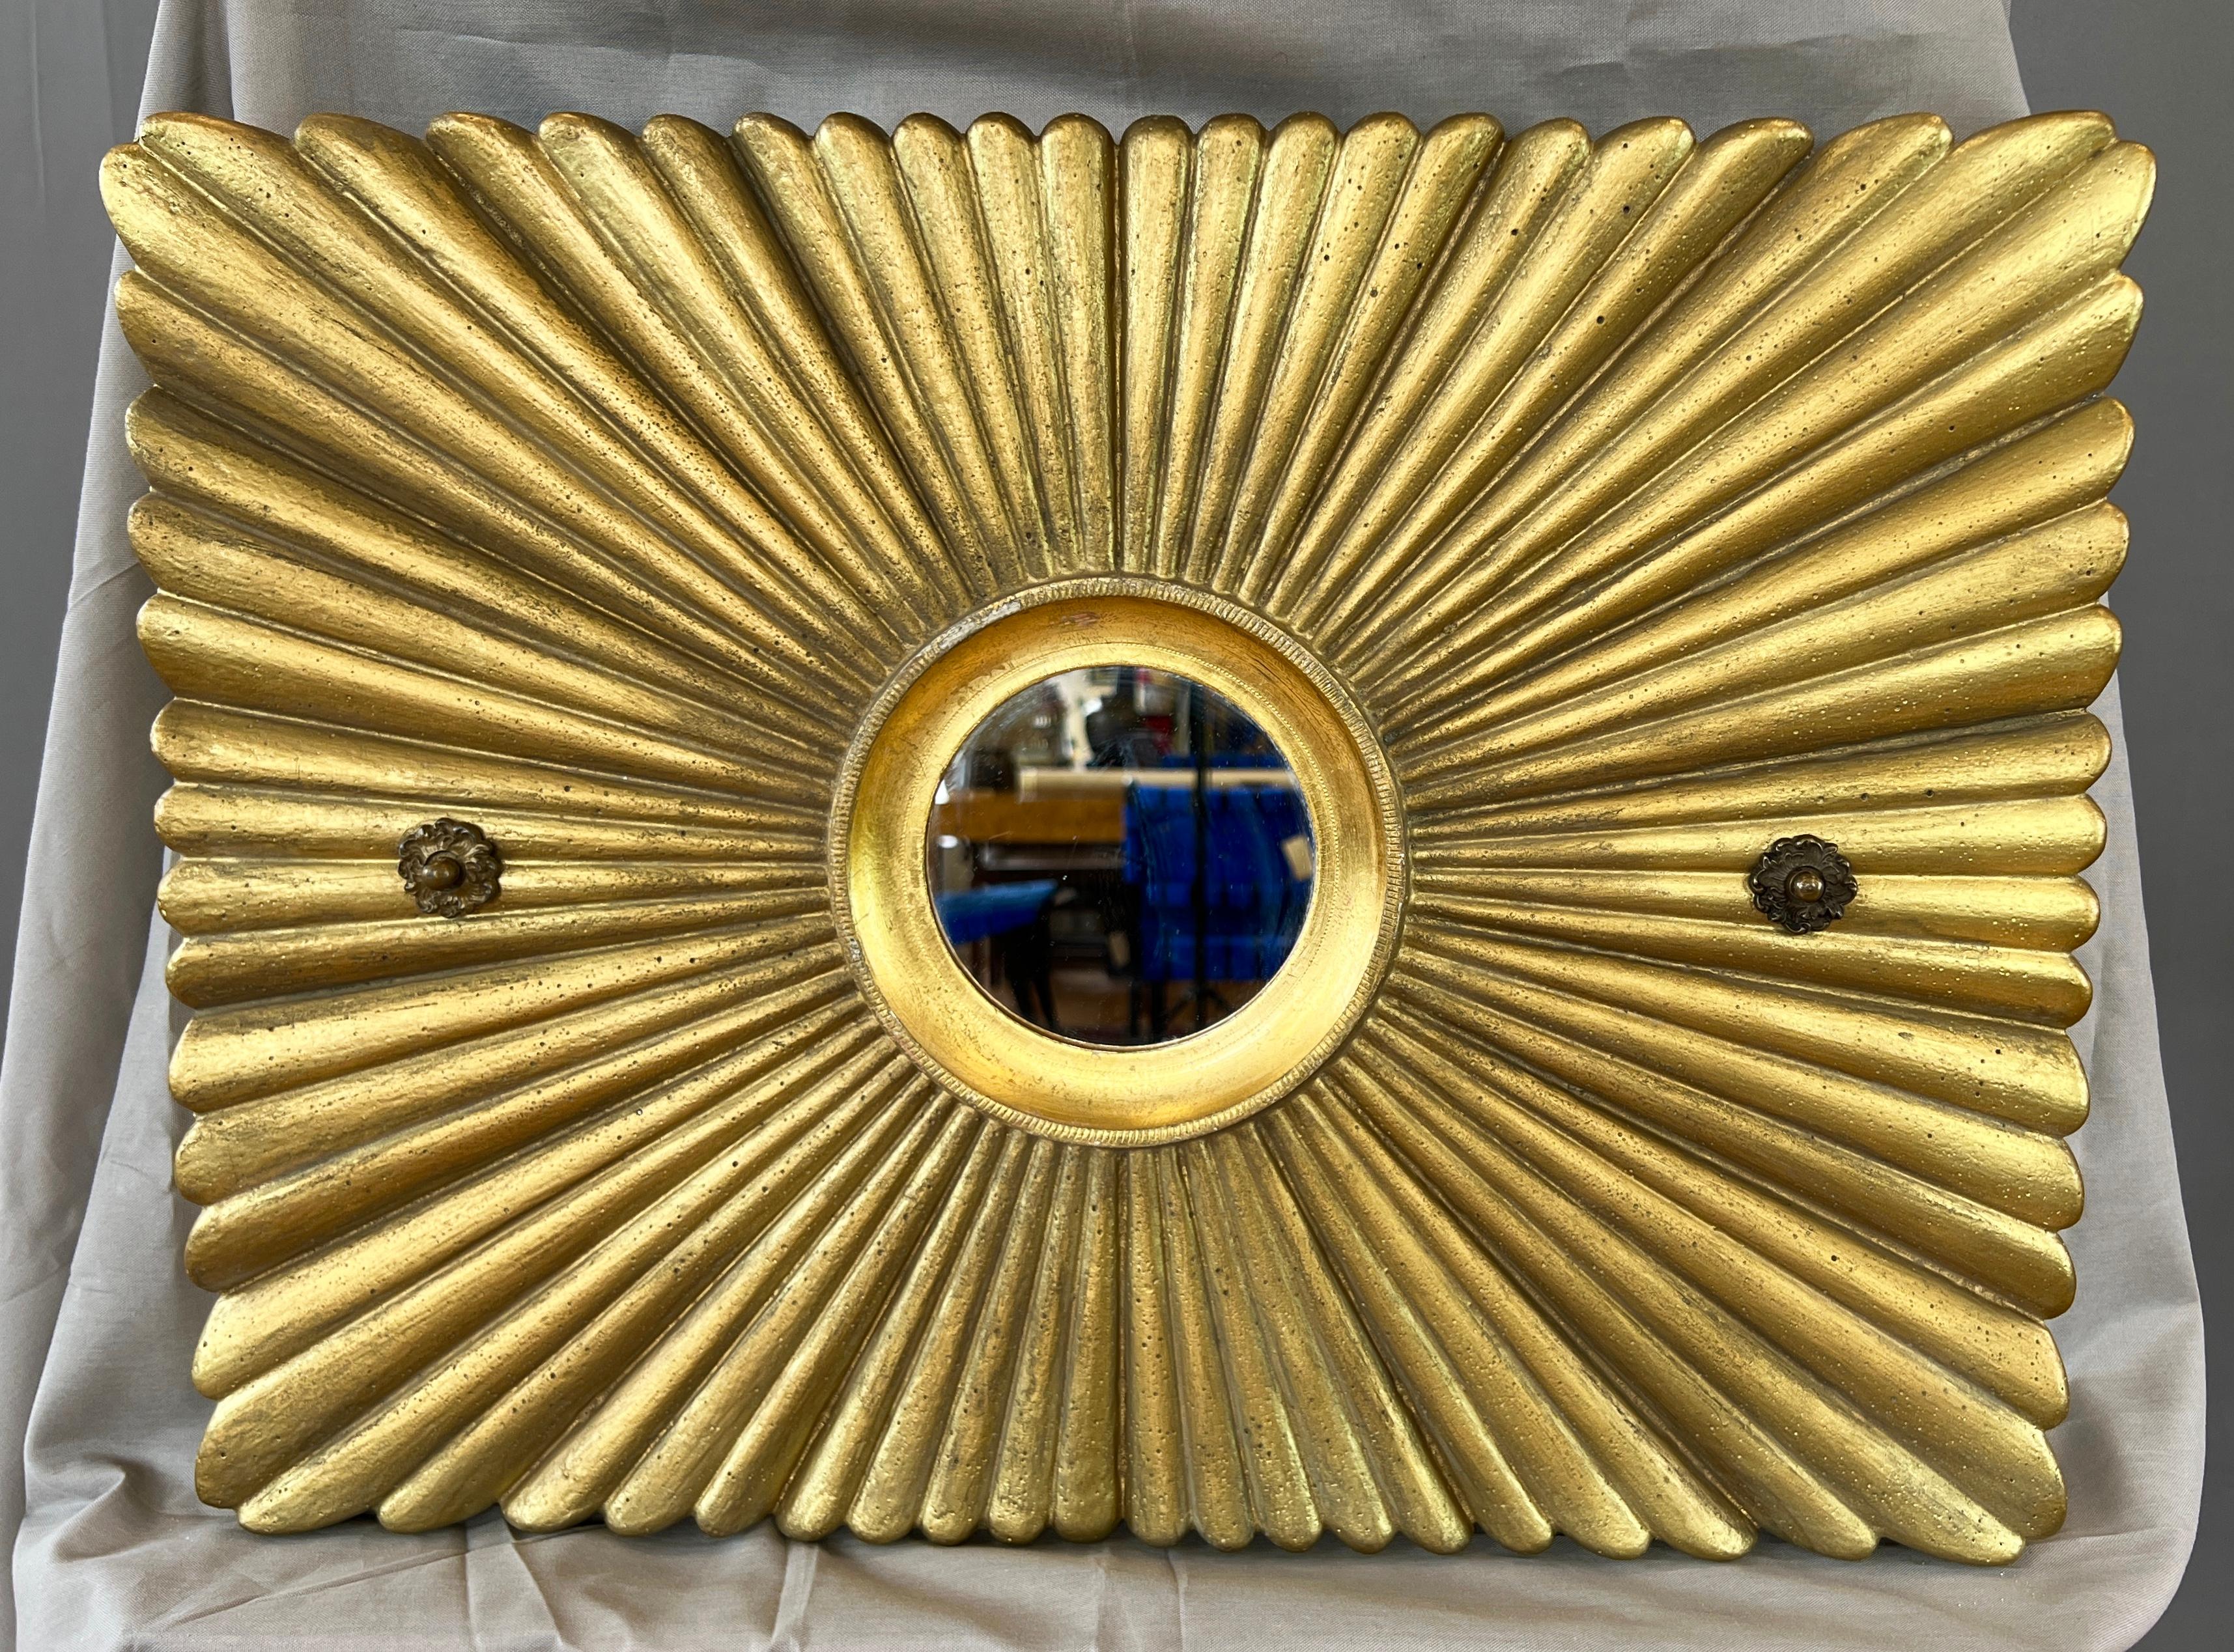 Décor de soleil en plâtre massif peint à l'or avec miroir à cadre en métal doré, datant d'environ 1920, provenant d'un cinéma ou d'une salle de jeux haut de gamme.

Un élément de décor classique rendu dans un style épuré et intemporel, avec un